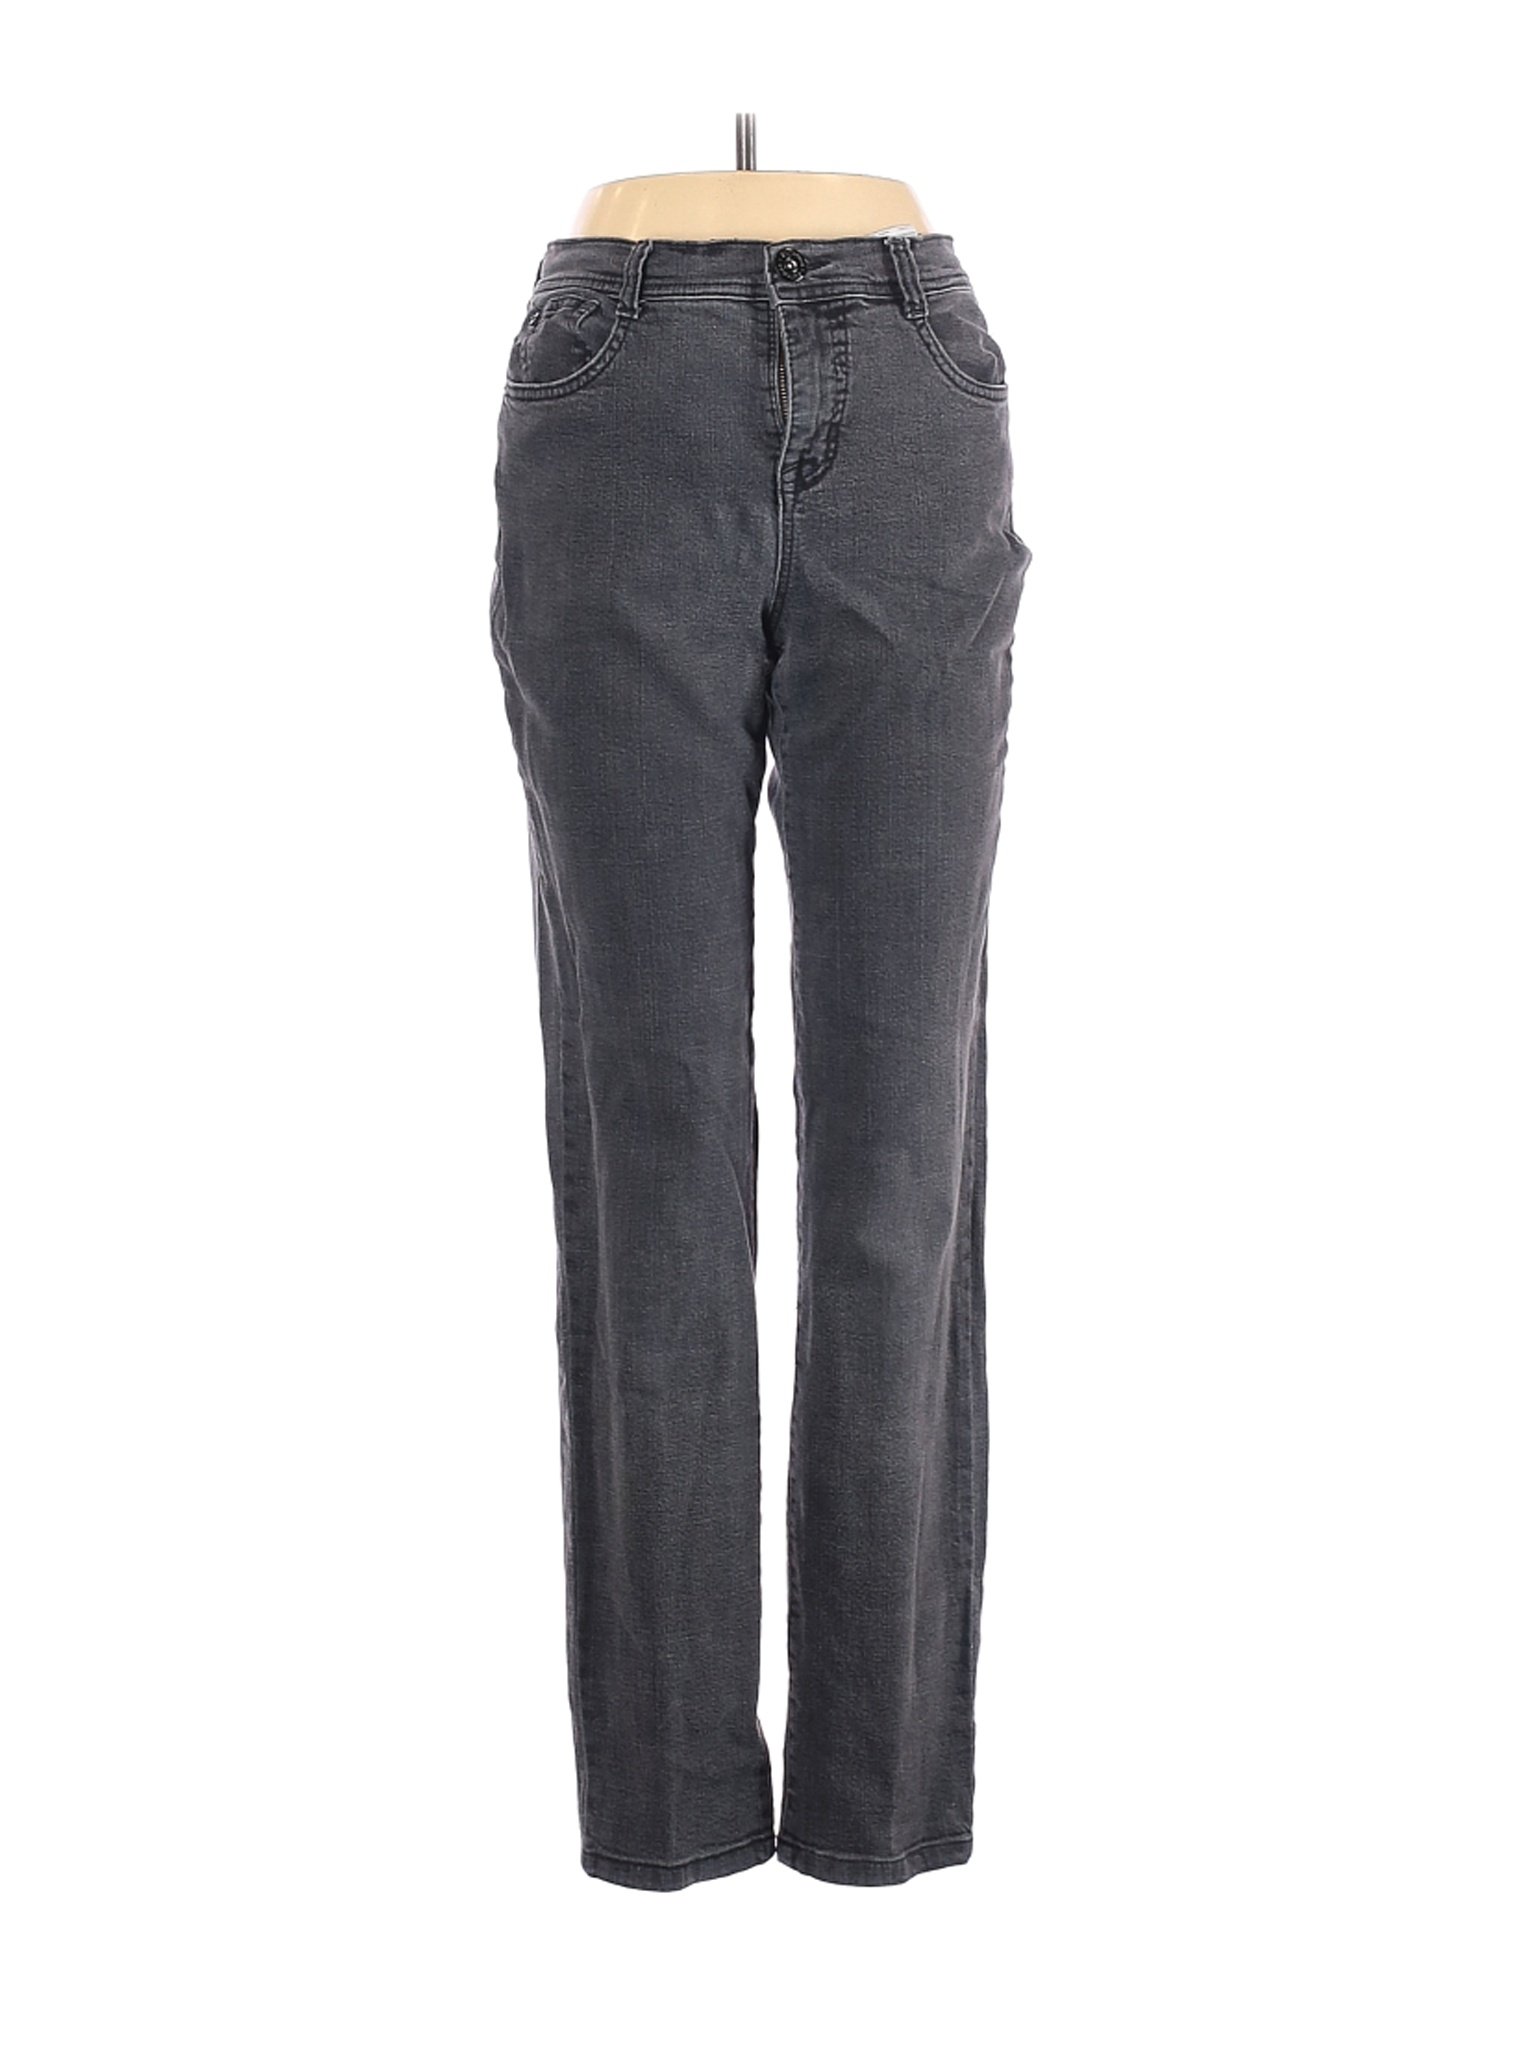 Style&Co Women Gray Jeans 4 | eBay